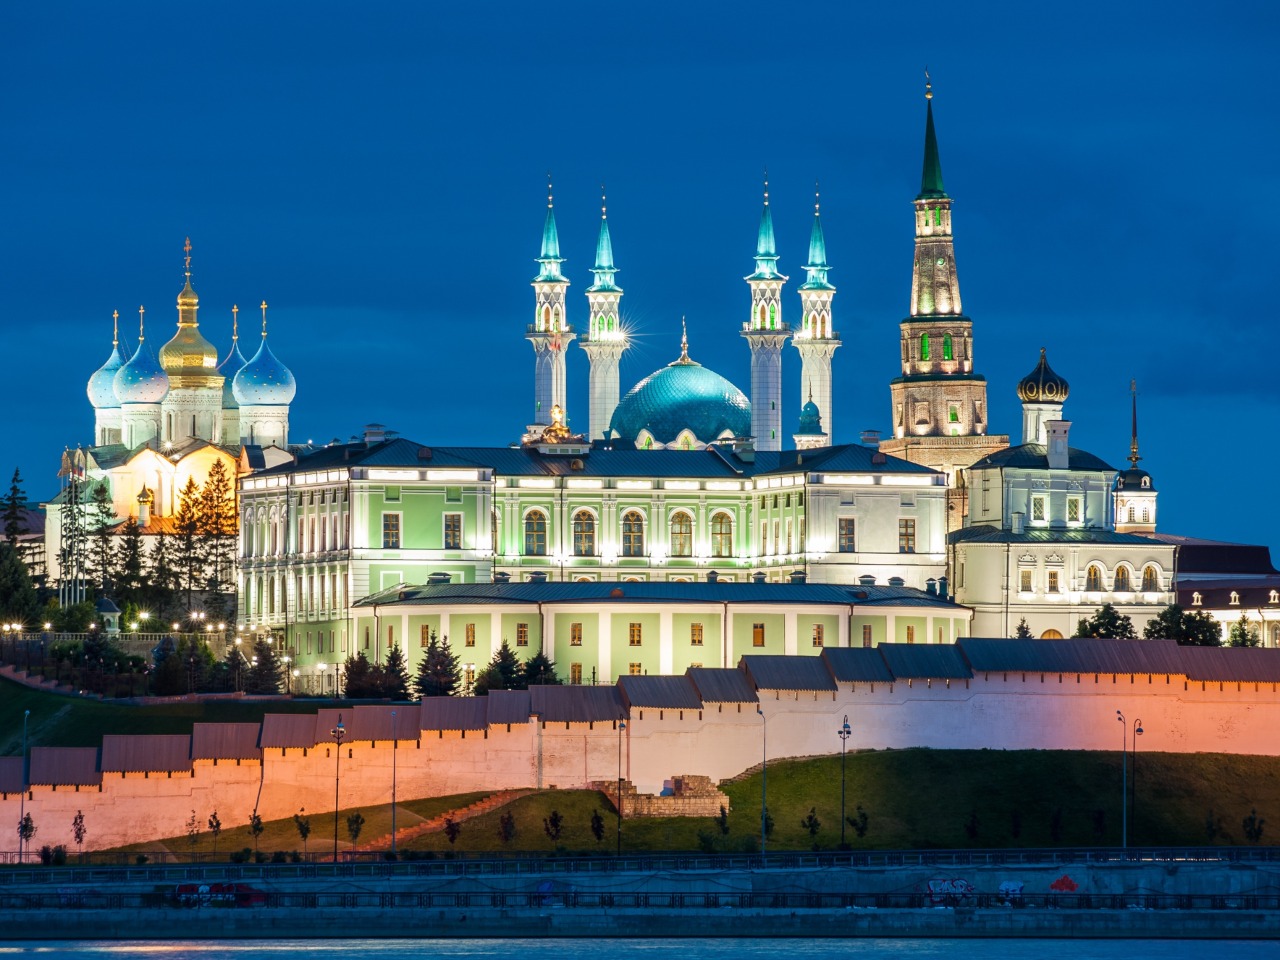 Обзорный сити-тур по Казани с визитом в Кремль | Цена 9600₽, отзывы, описание экскурсии